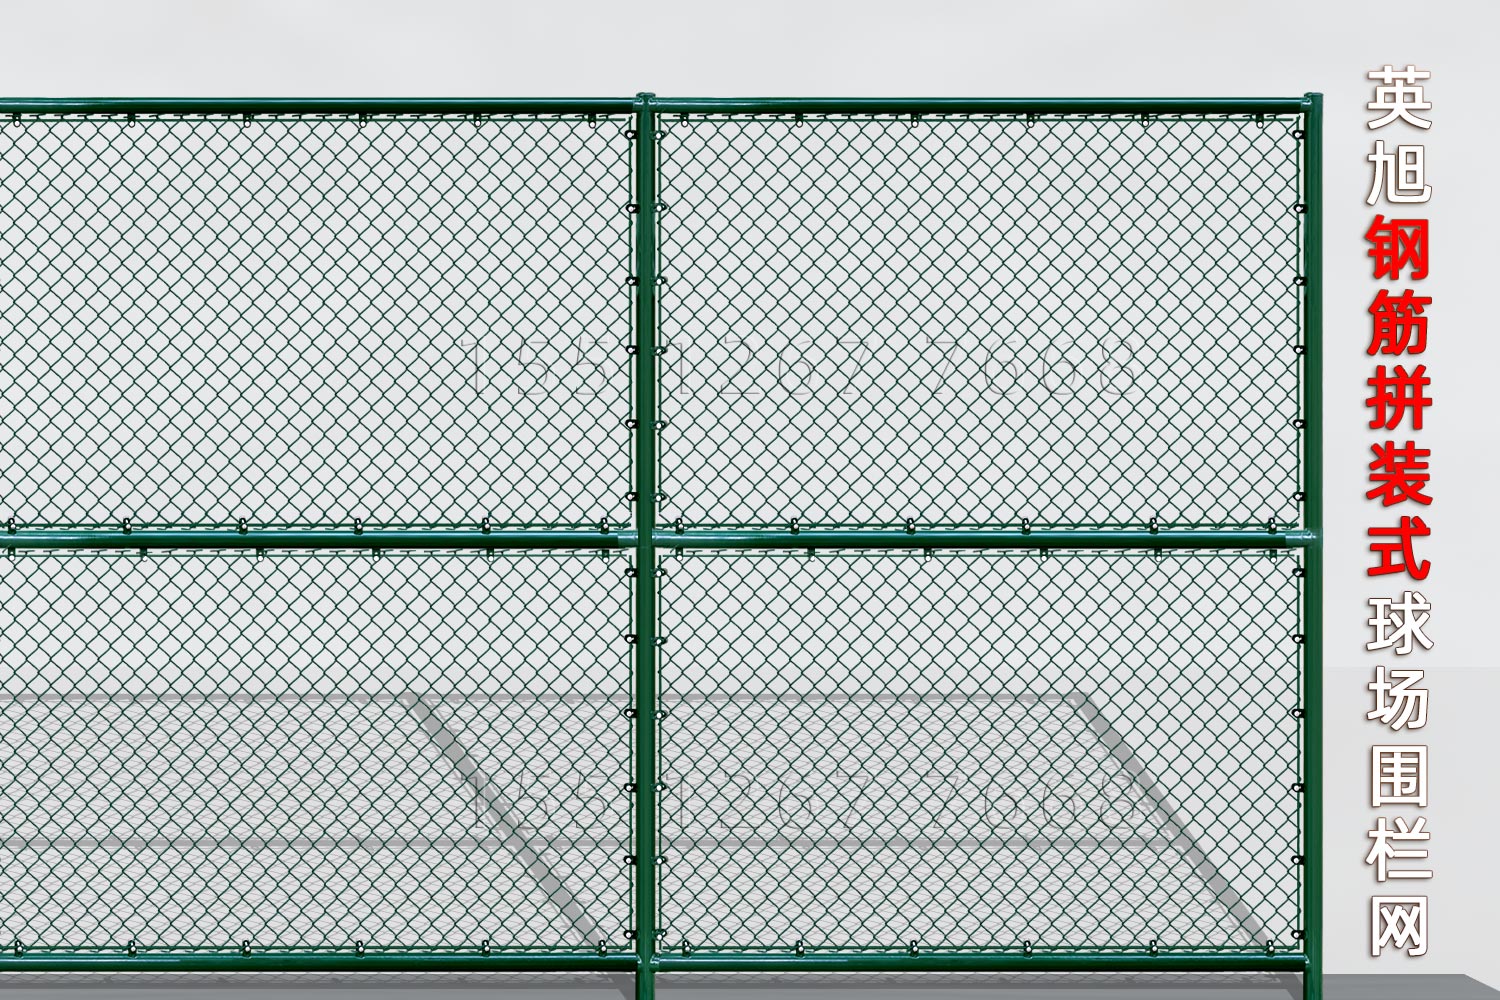 山东钢筋组装式球场围栏网